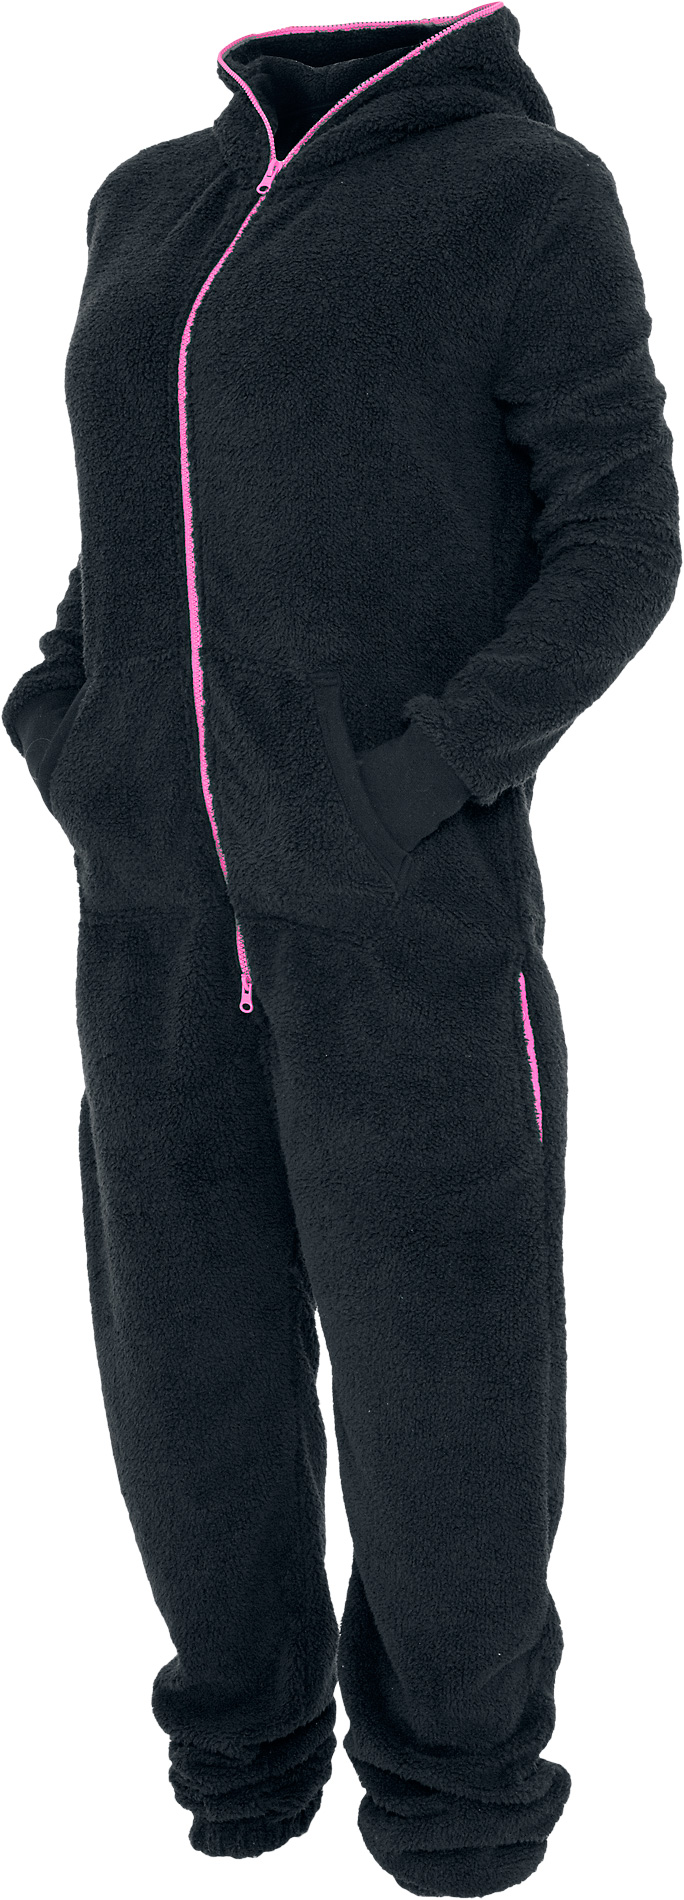 Urban Classics Overall - Ladies Teddy Jumpsuit - XS-S bis XL-XXL - für Damen - Größe XS-S - schwarz